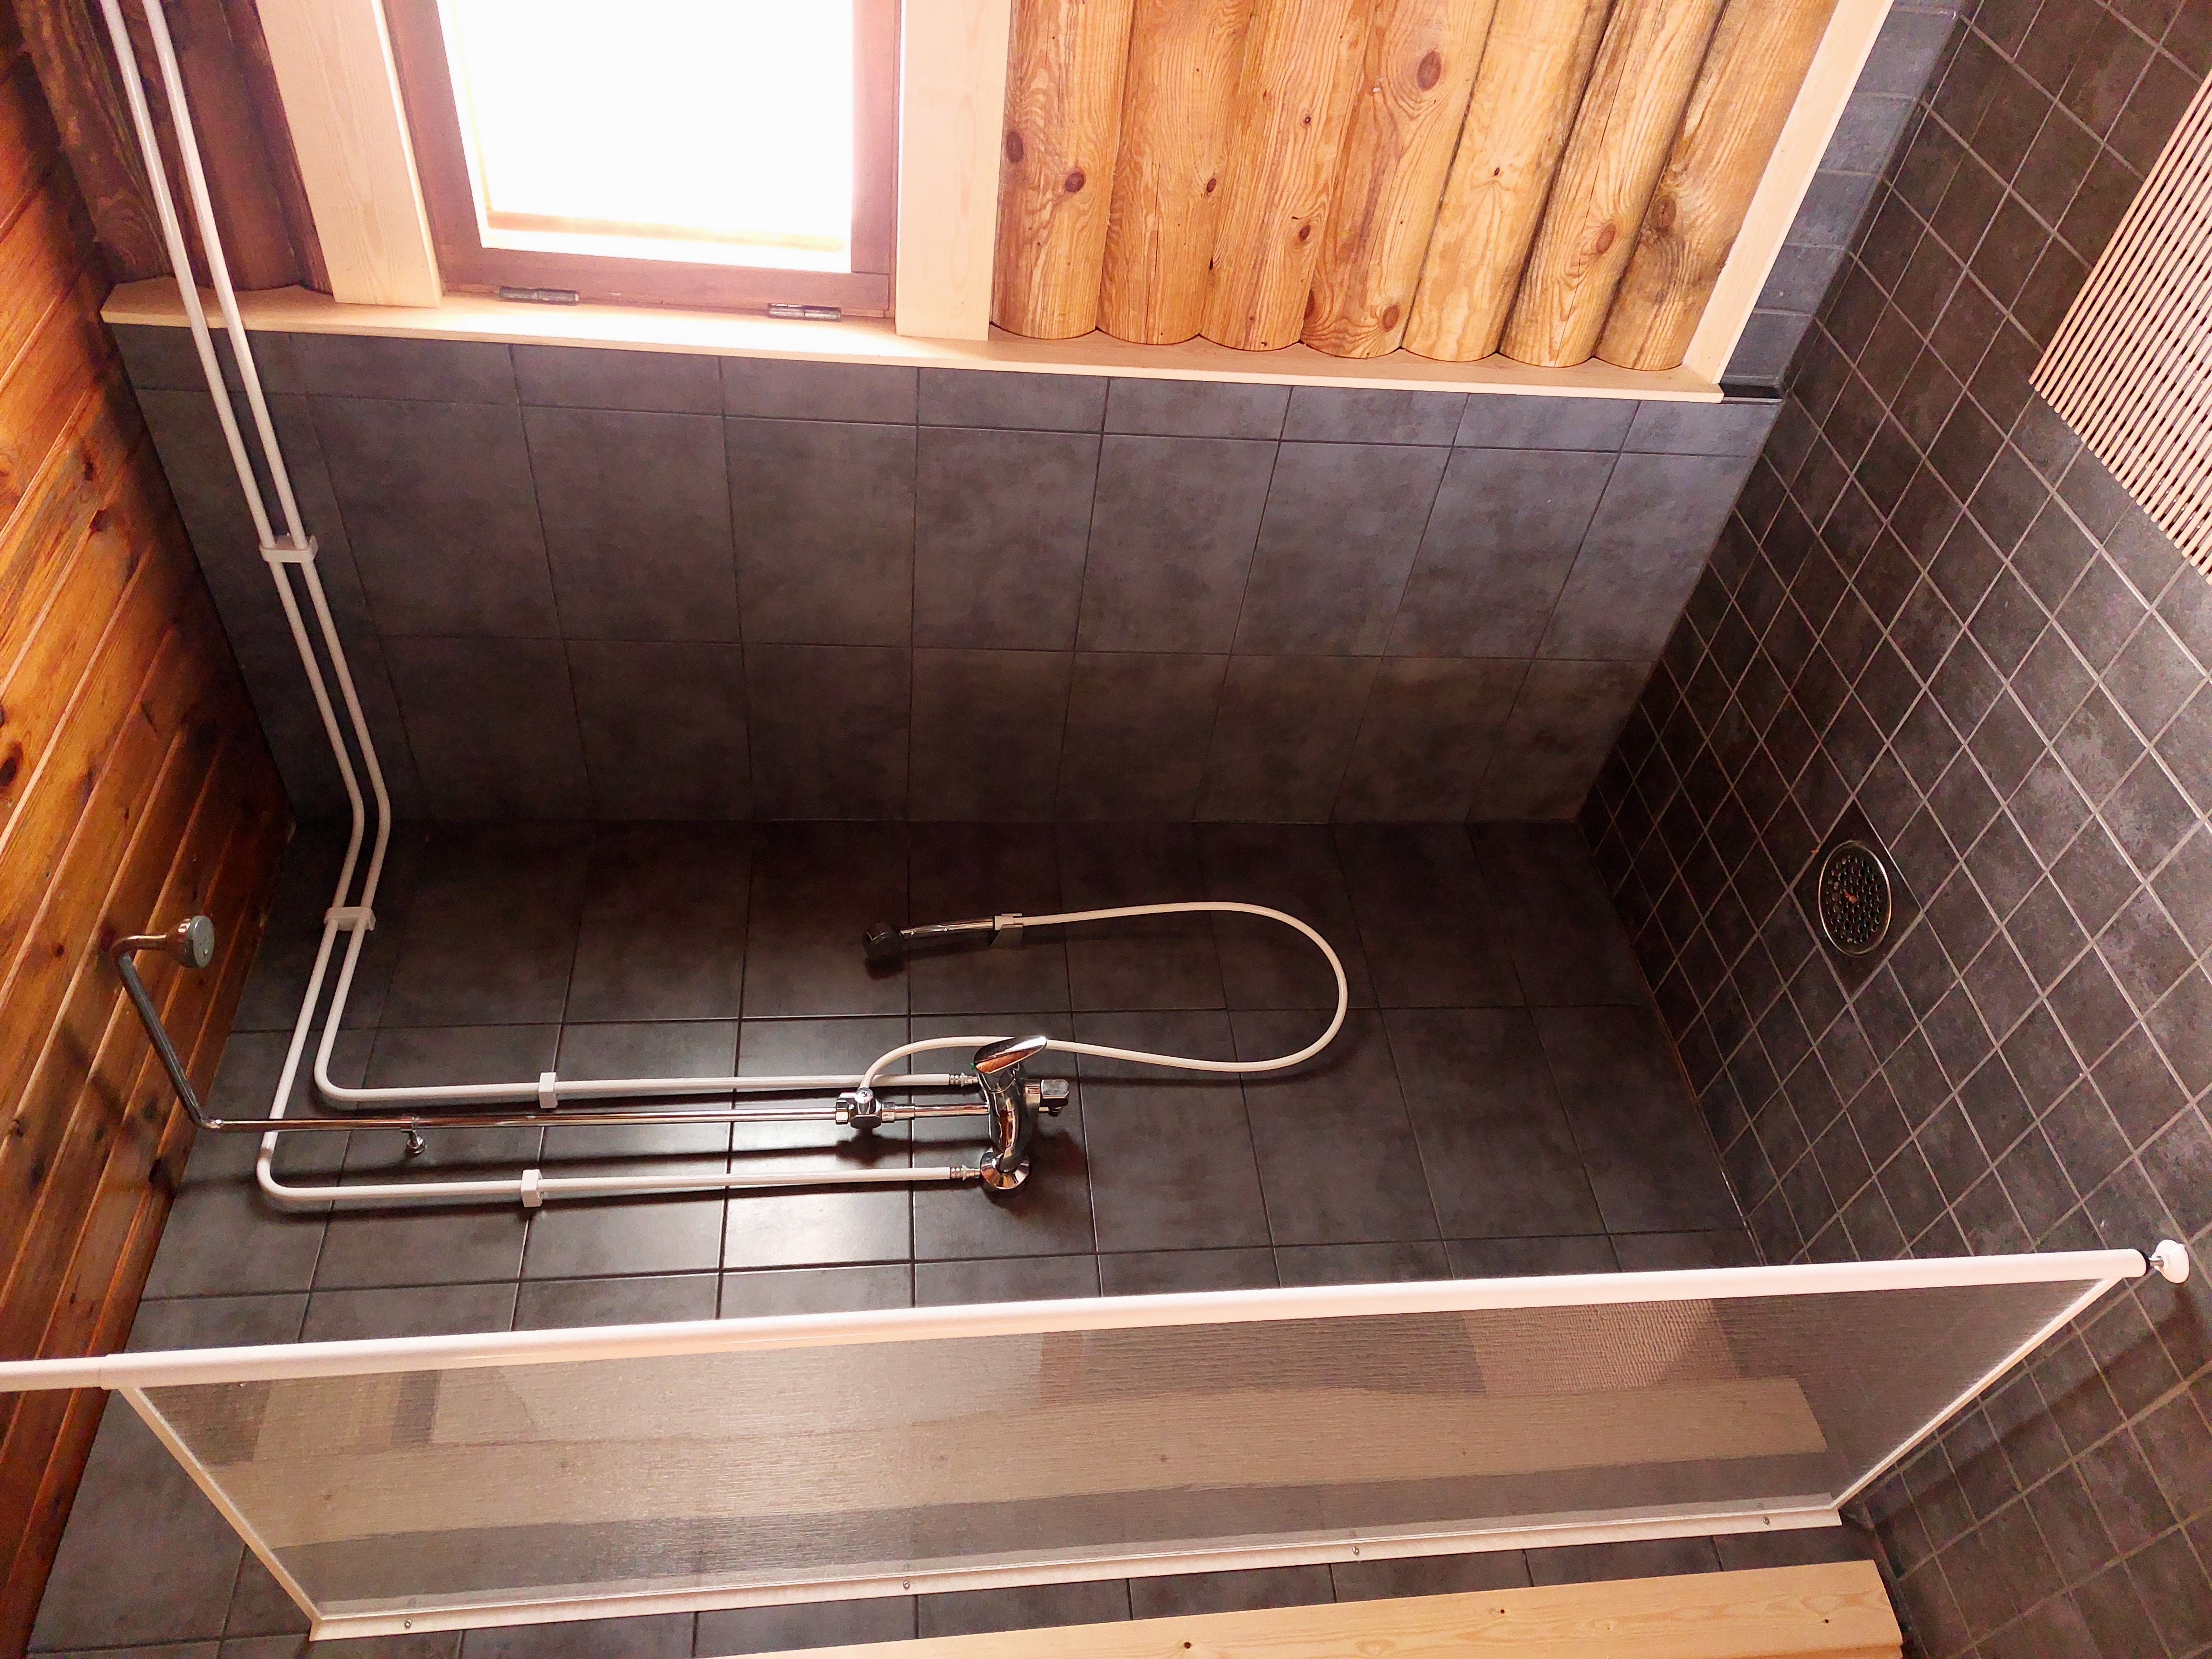 Sulkavankosken saunarakennuksen suihku